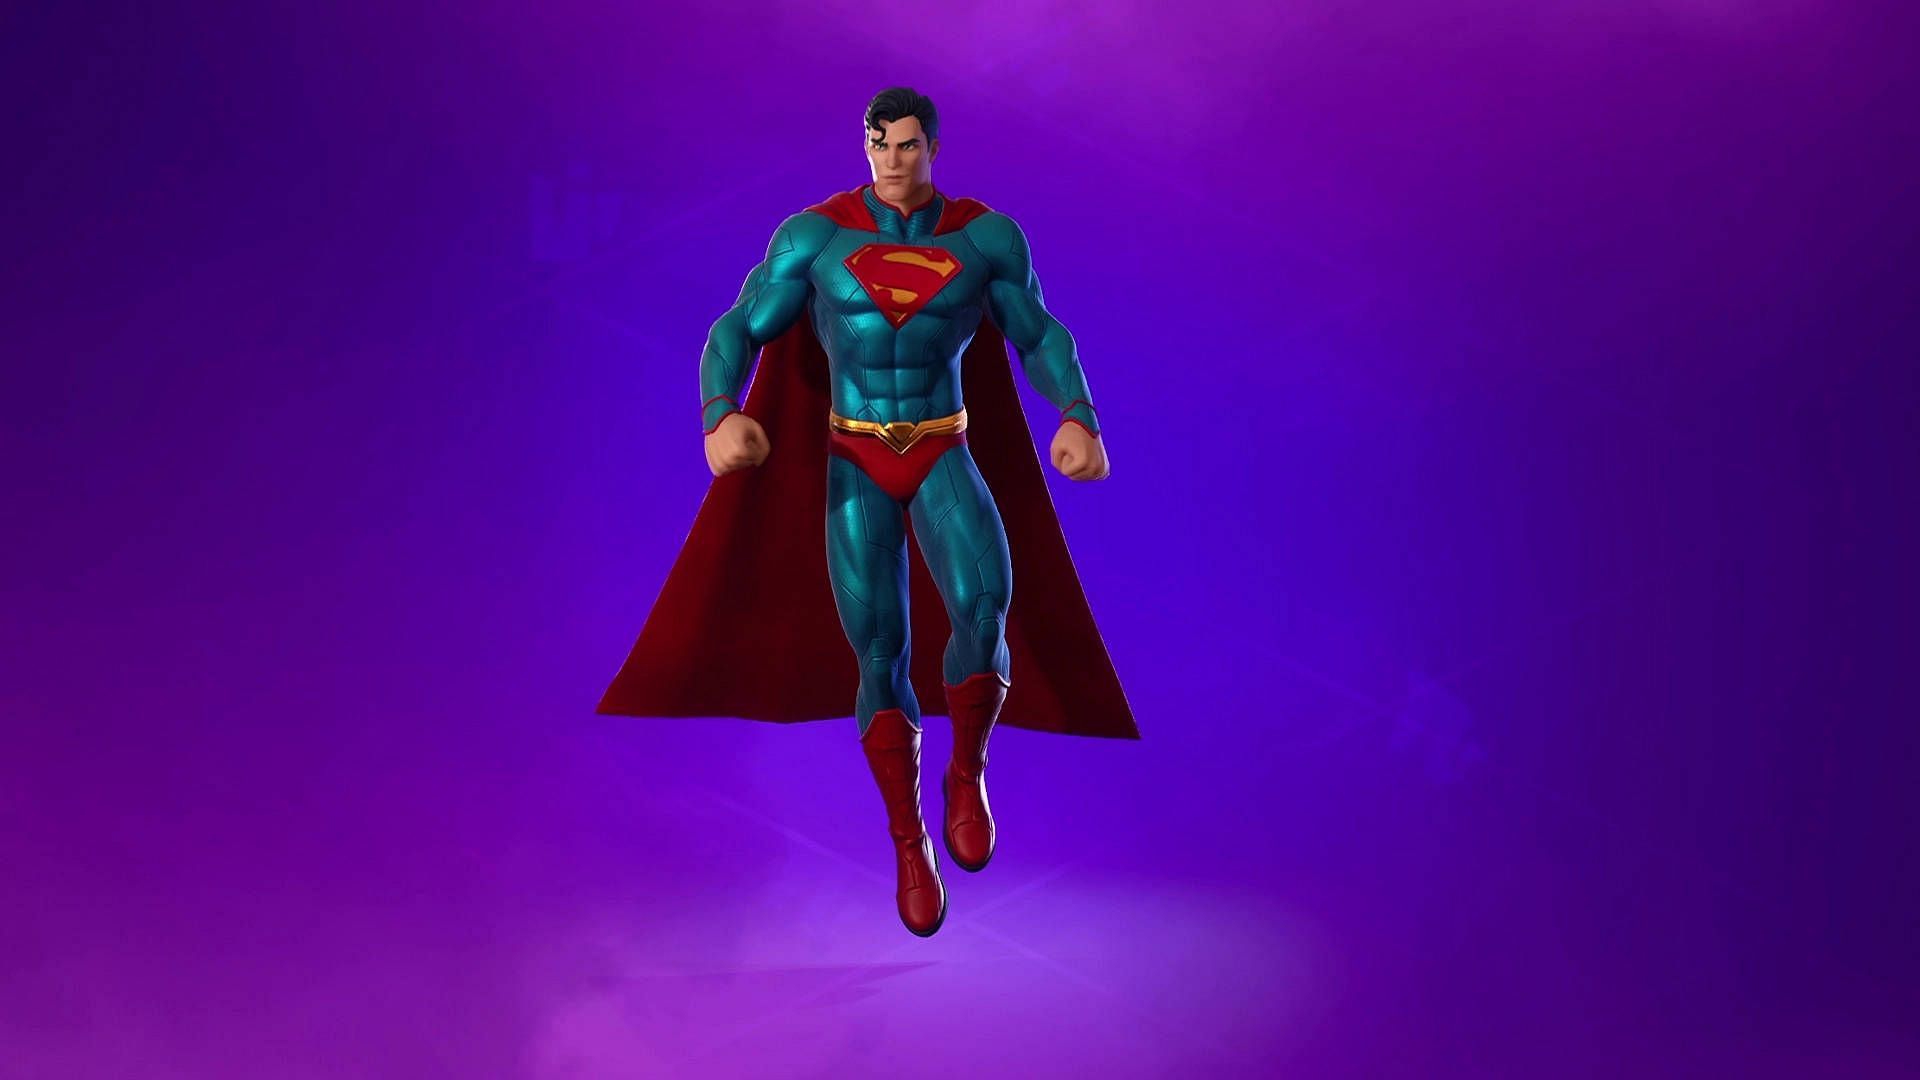 Superman skin in Fortnite (Image via Epic Games)